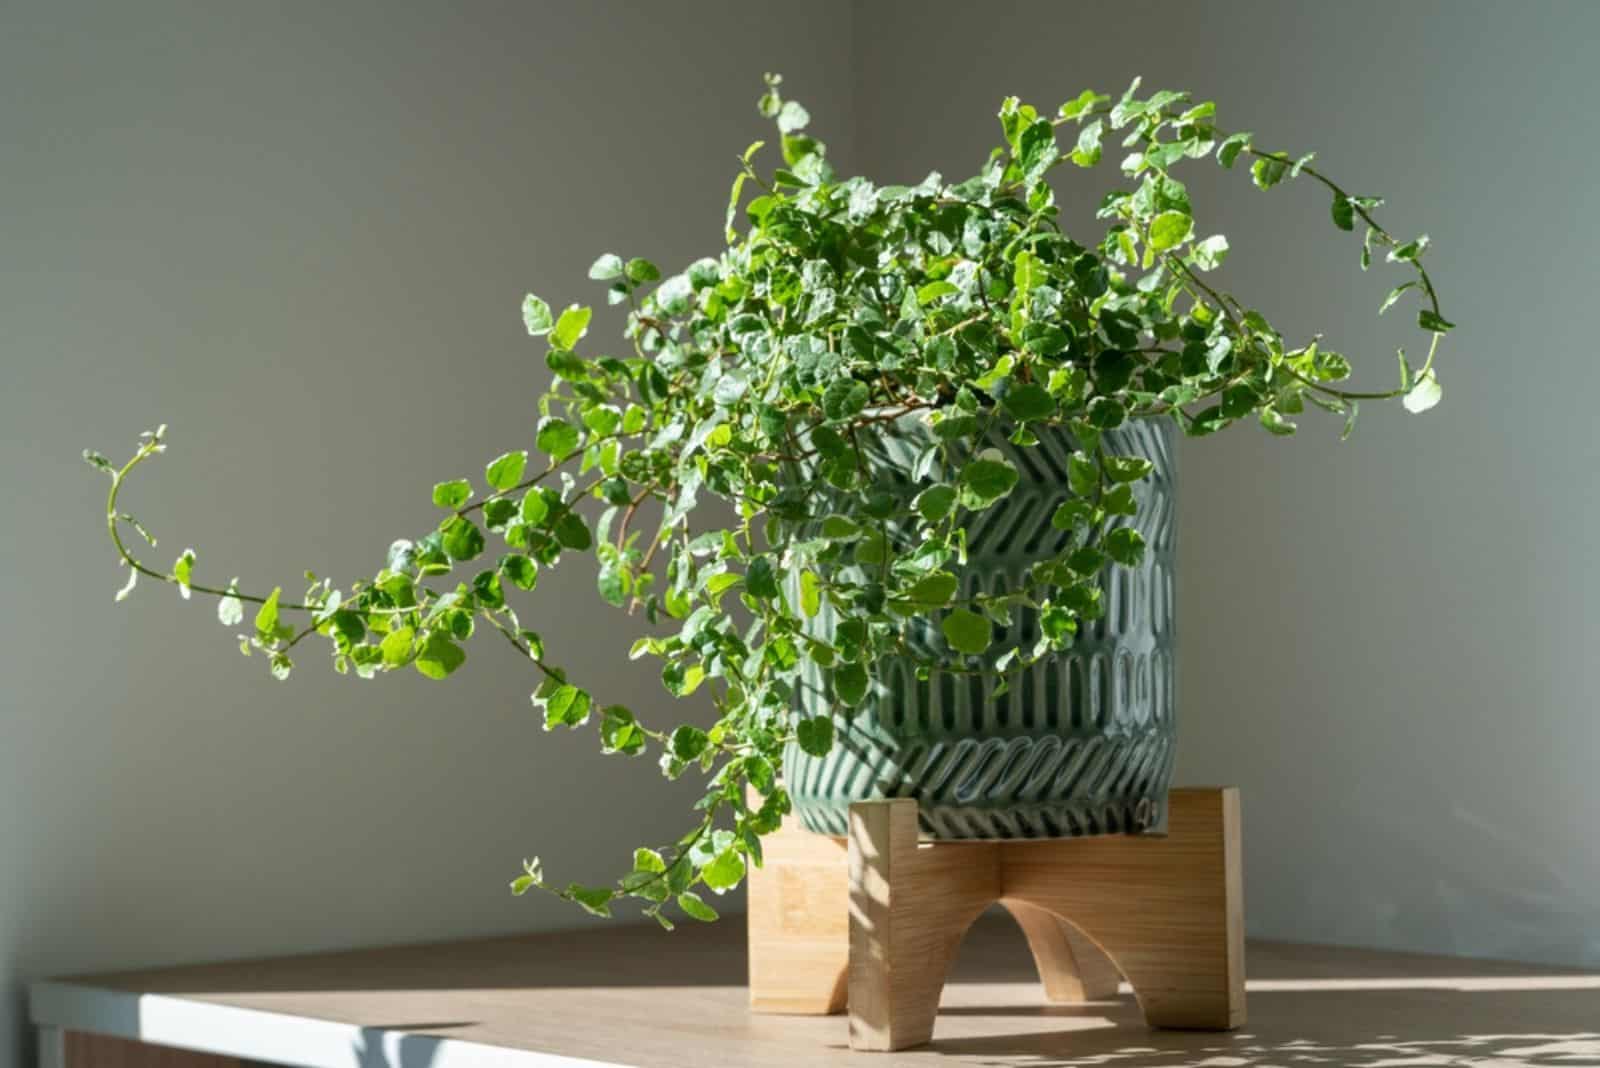  Ficus Pumila plant in ceramic planter at home